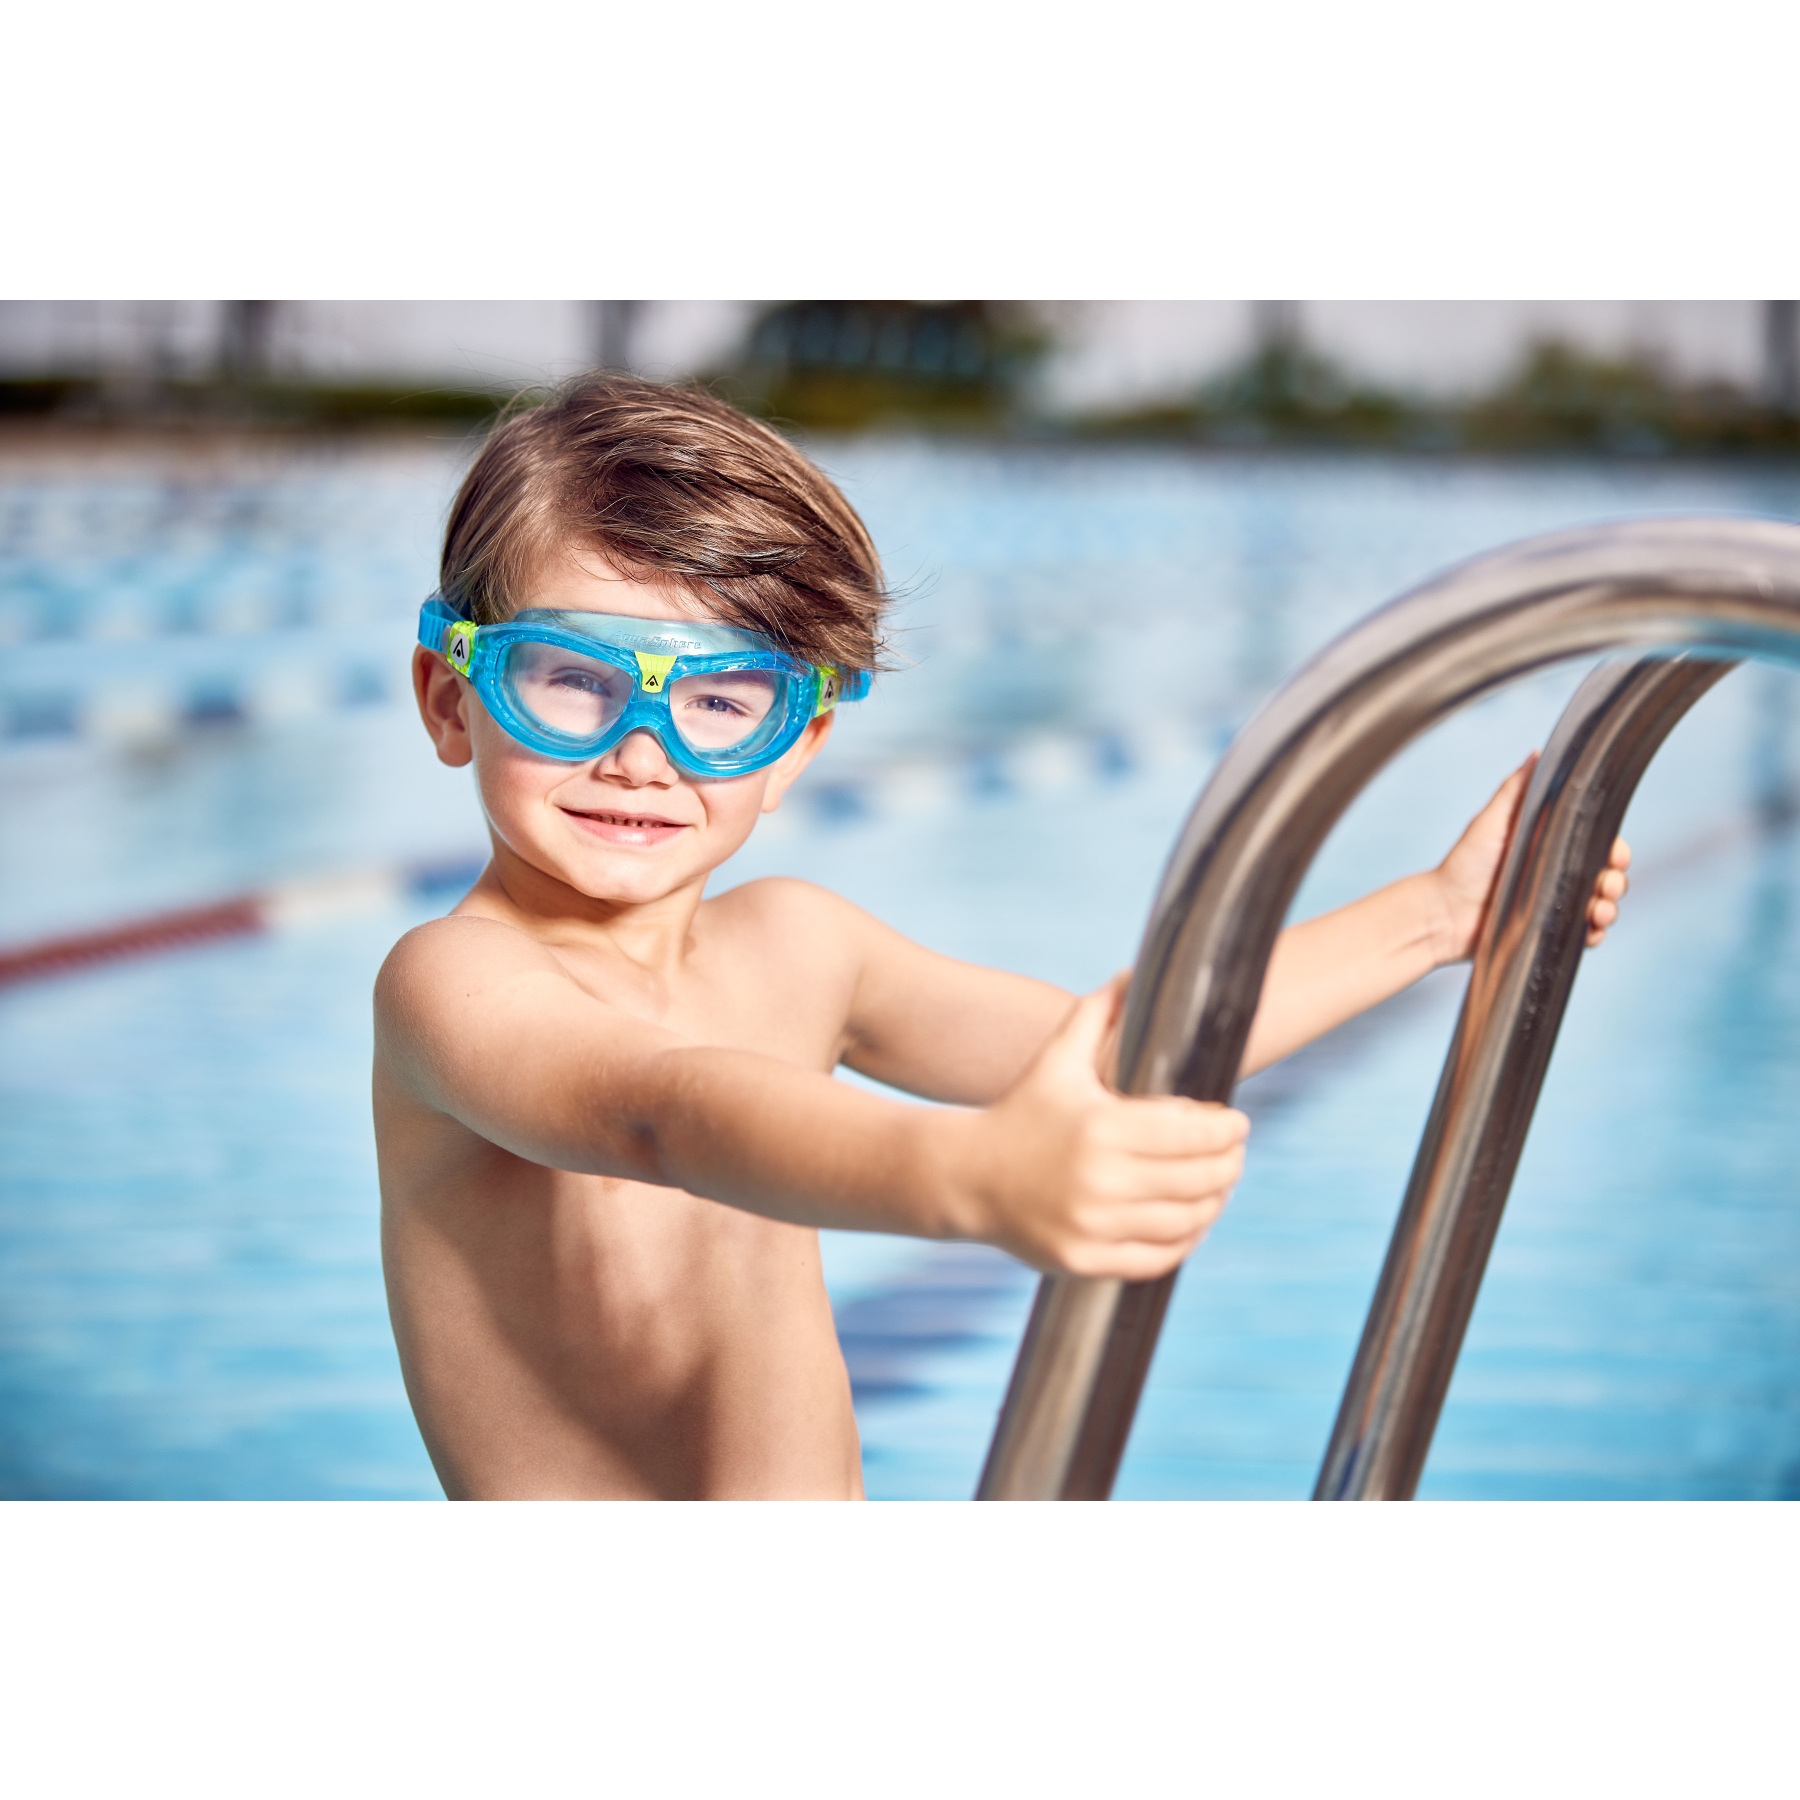 Aquasphere Seal Kid 2 azul gafas natación niño